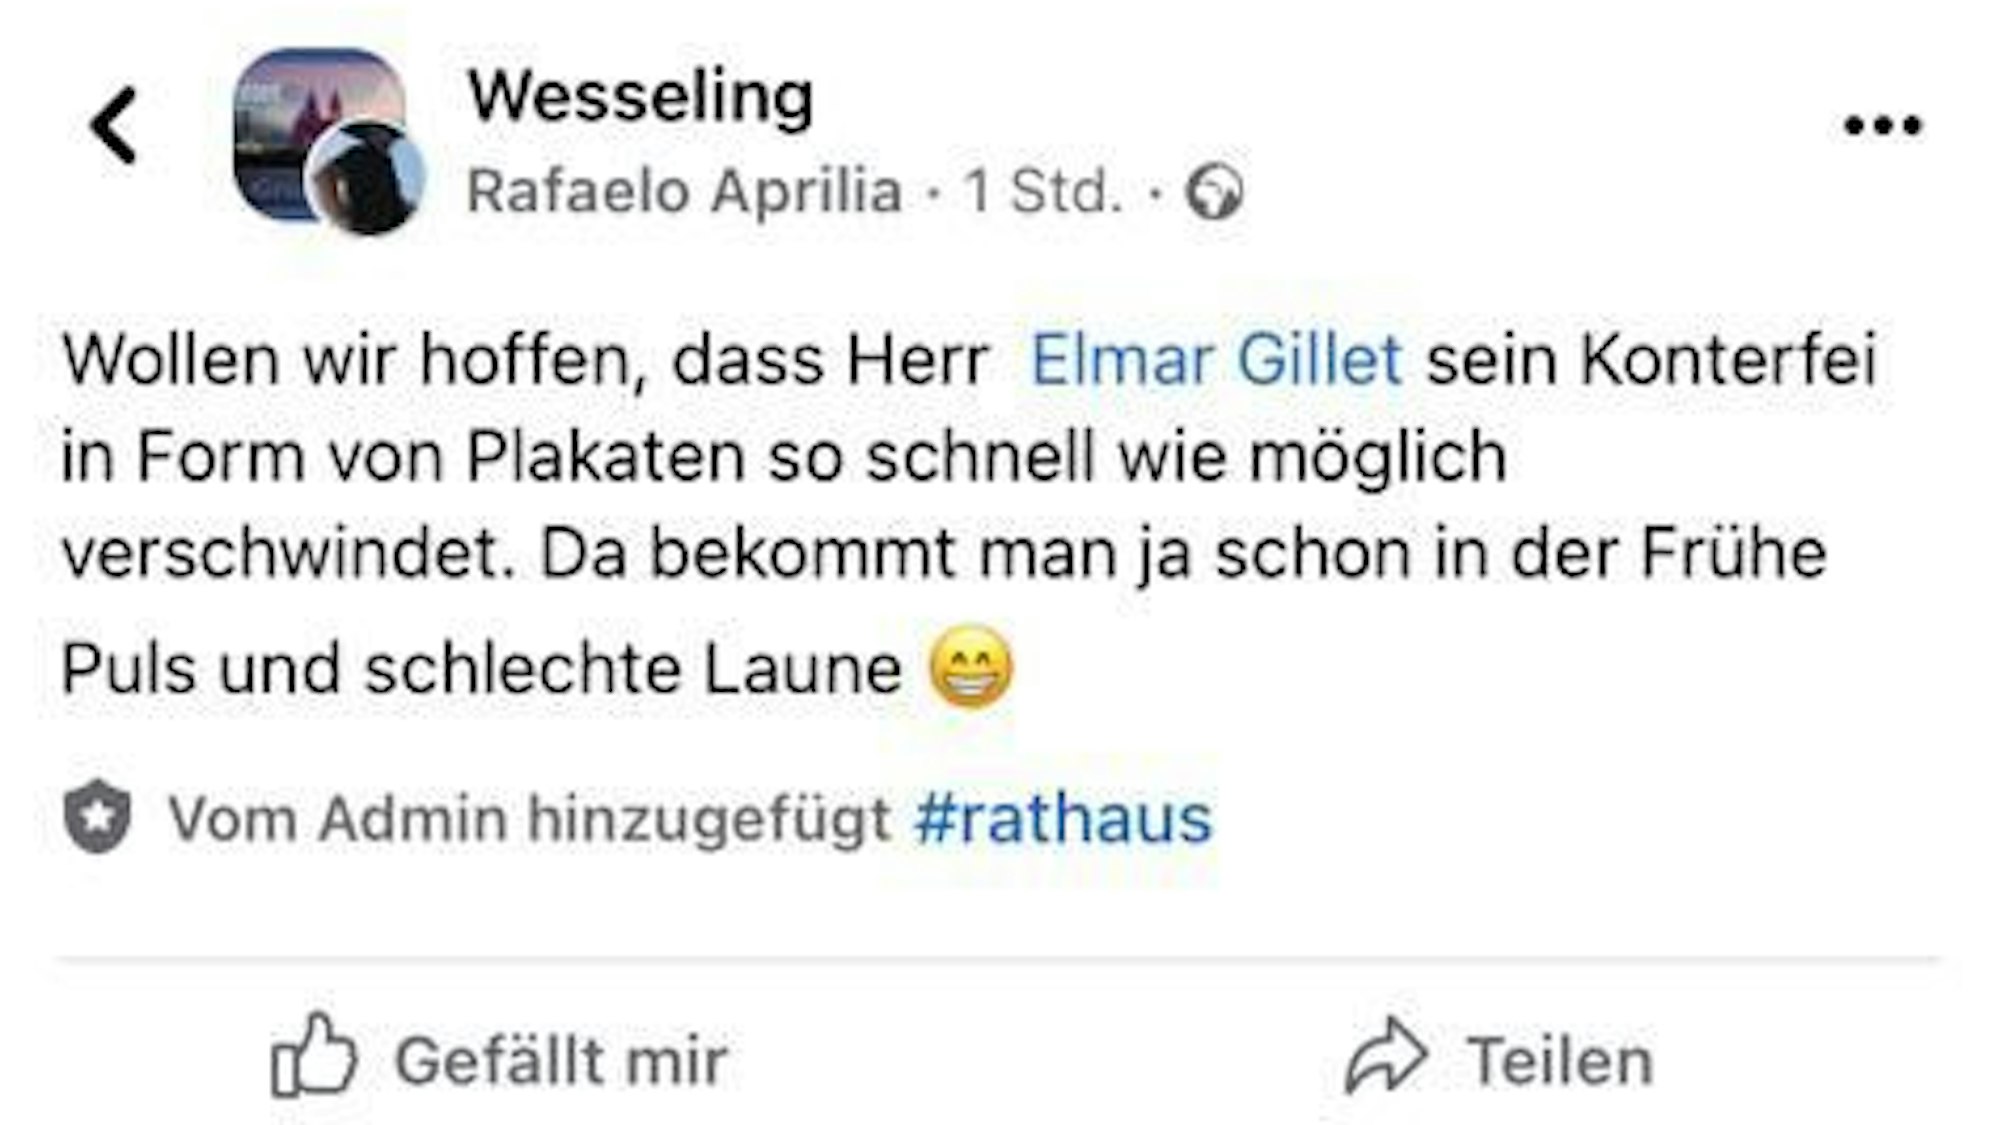 Auf Facebook hat Rafaelo Aprilia alias Ralf Metternic folgende Sätze gepostet: „Wollen wir hoffen, dass Herr Elmar Gillet sein Konterfei in Form von Plakaten so schnell wie möglich verschwindet. Da bekommt man ja schon in der Frühe Puls und schlechte Laune.“